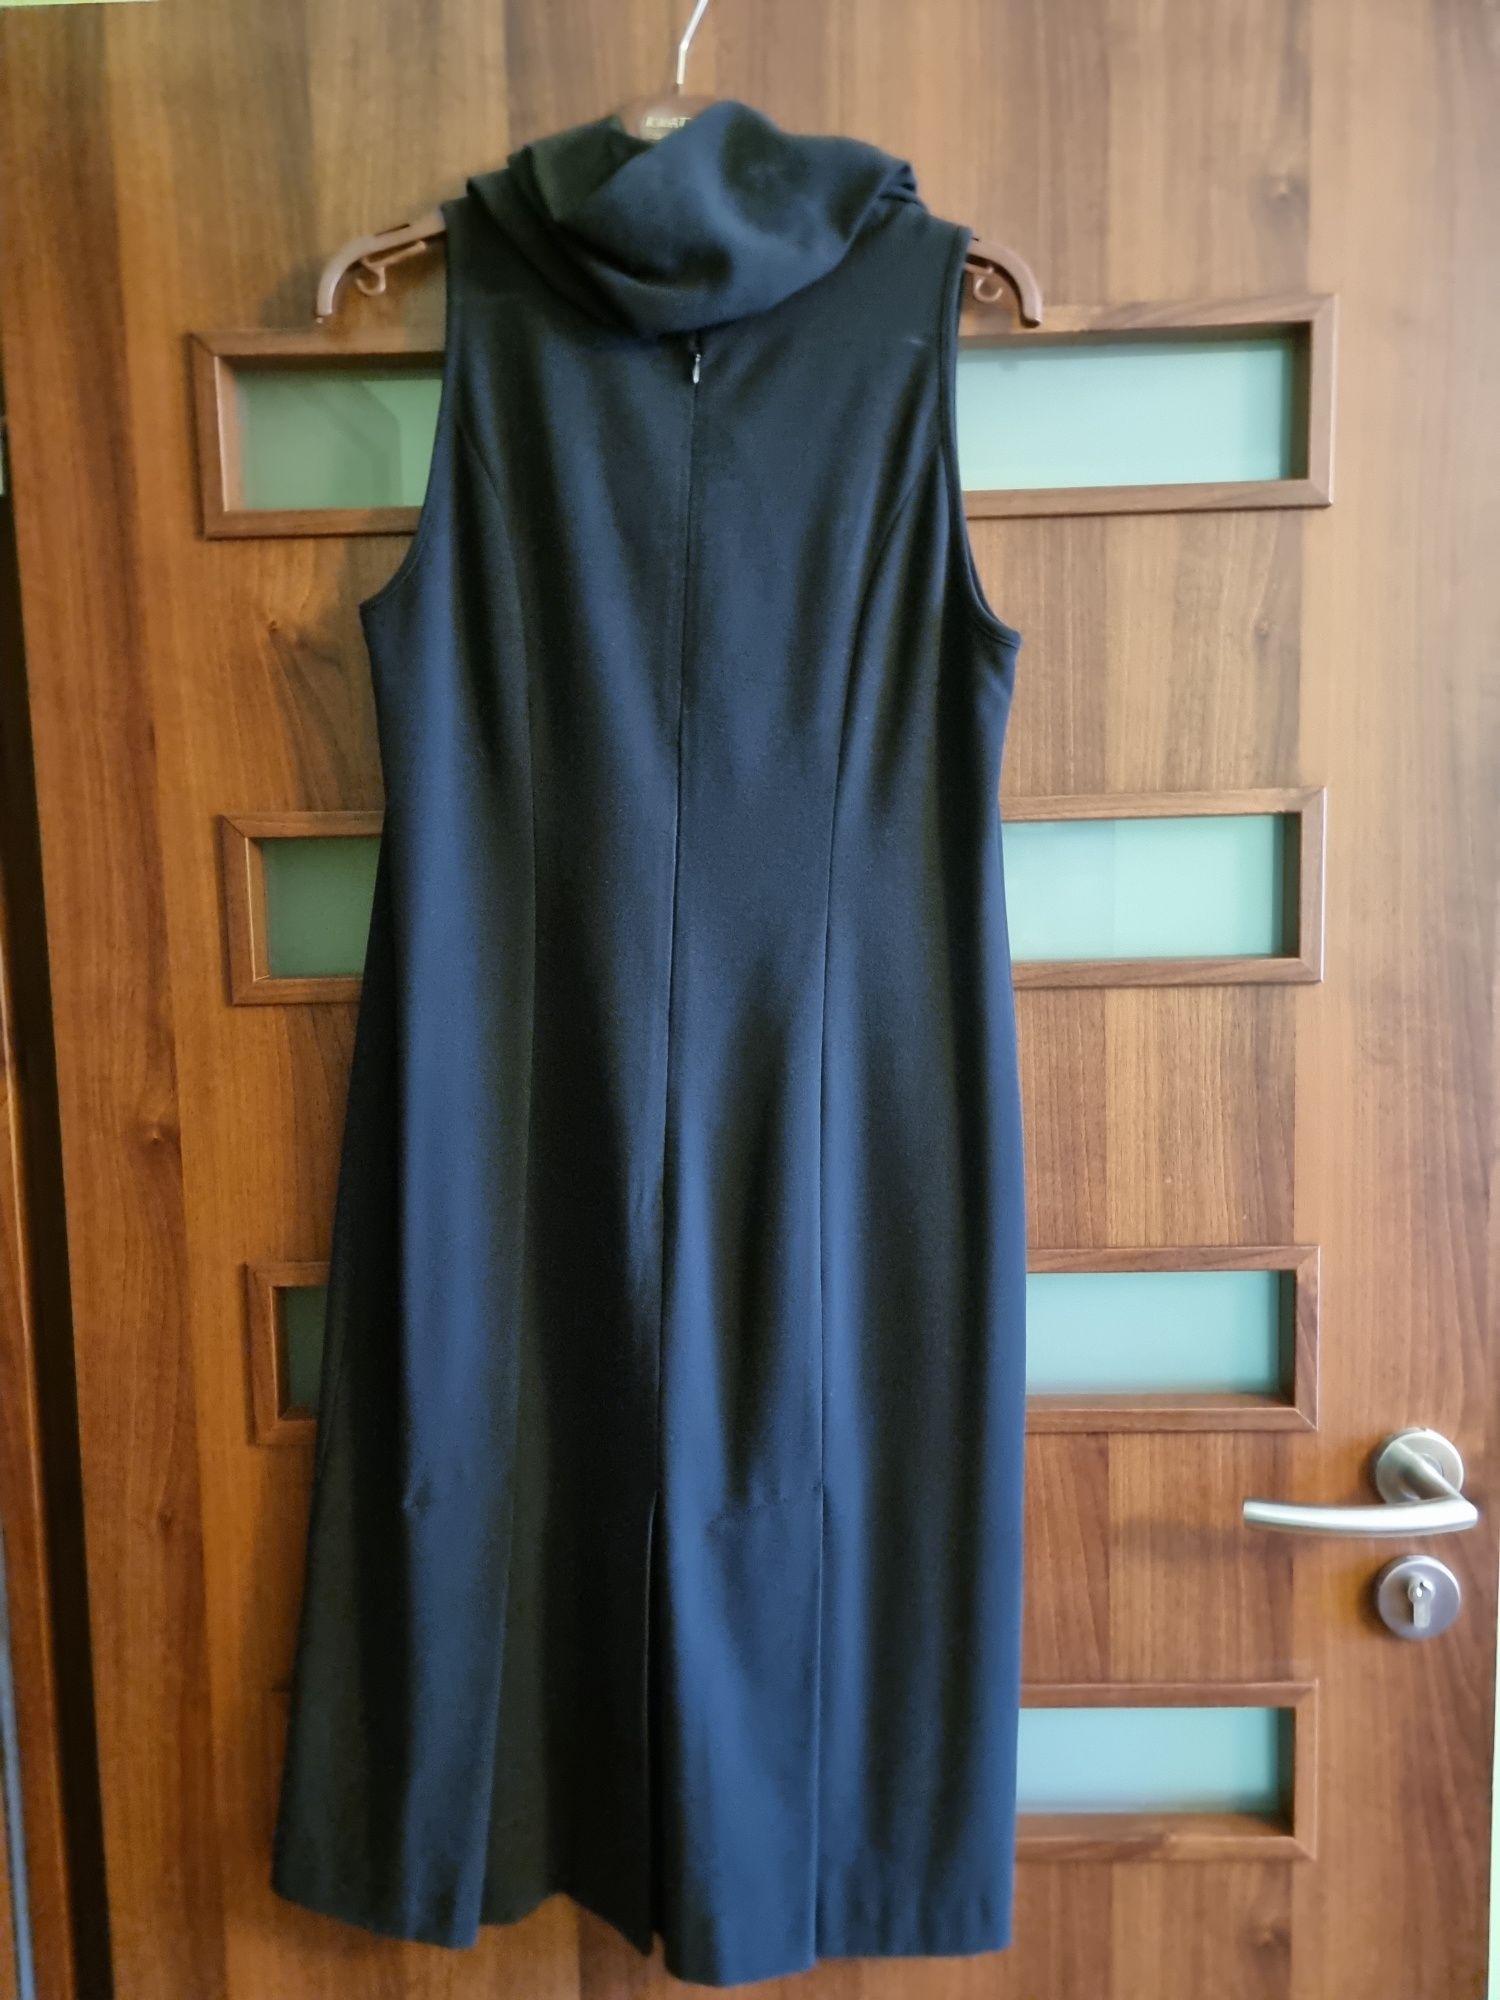 Czarna sukienka 42